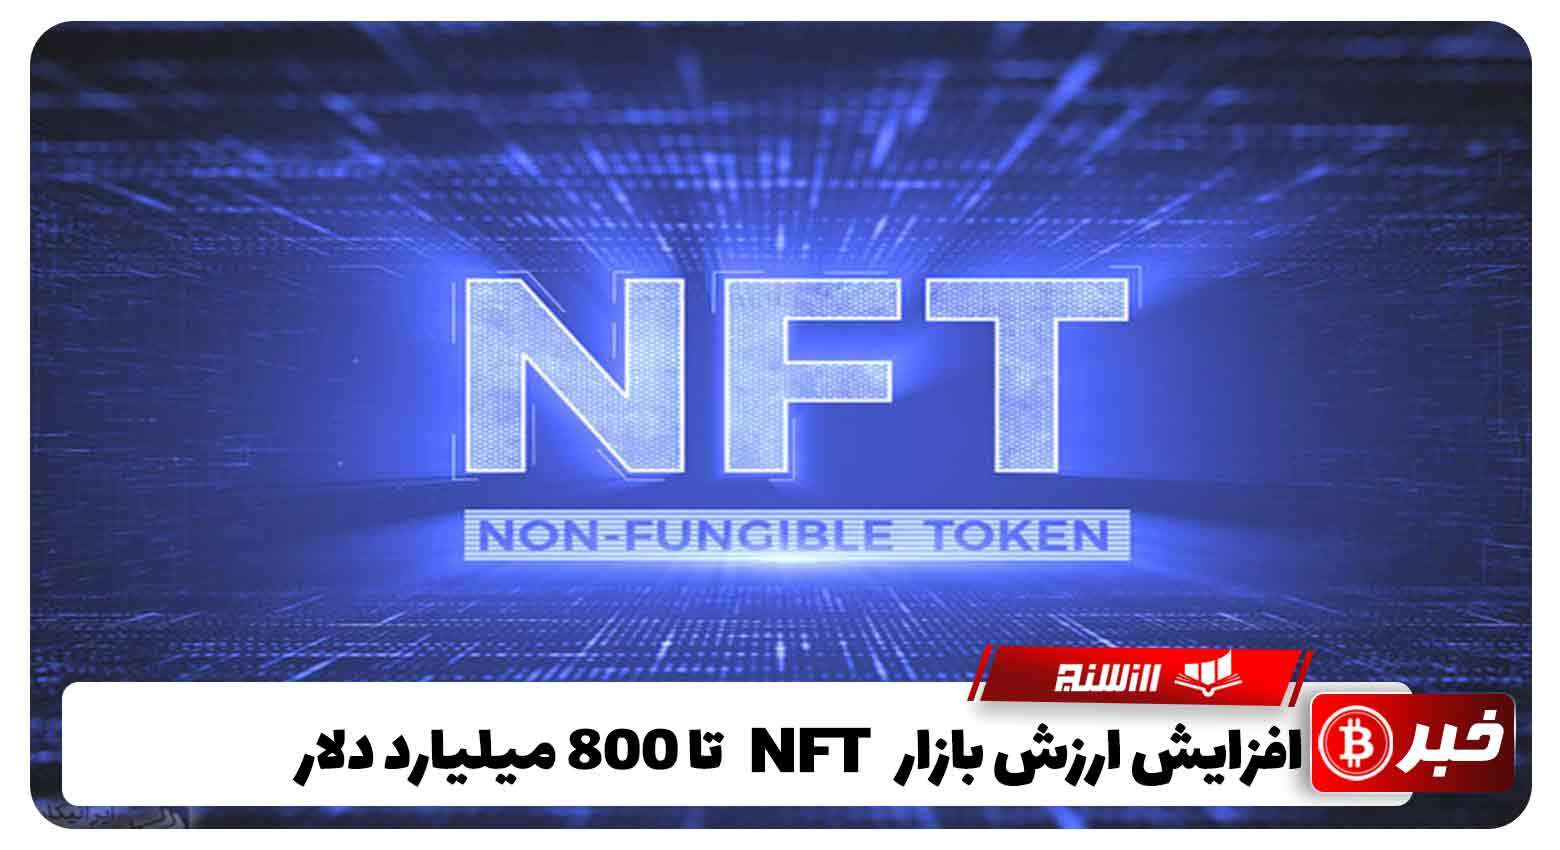 پیش بینی افزایش ارزش بازار NFT تا 800 میلیارد دلار